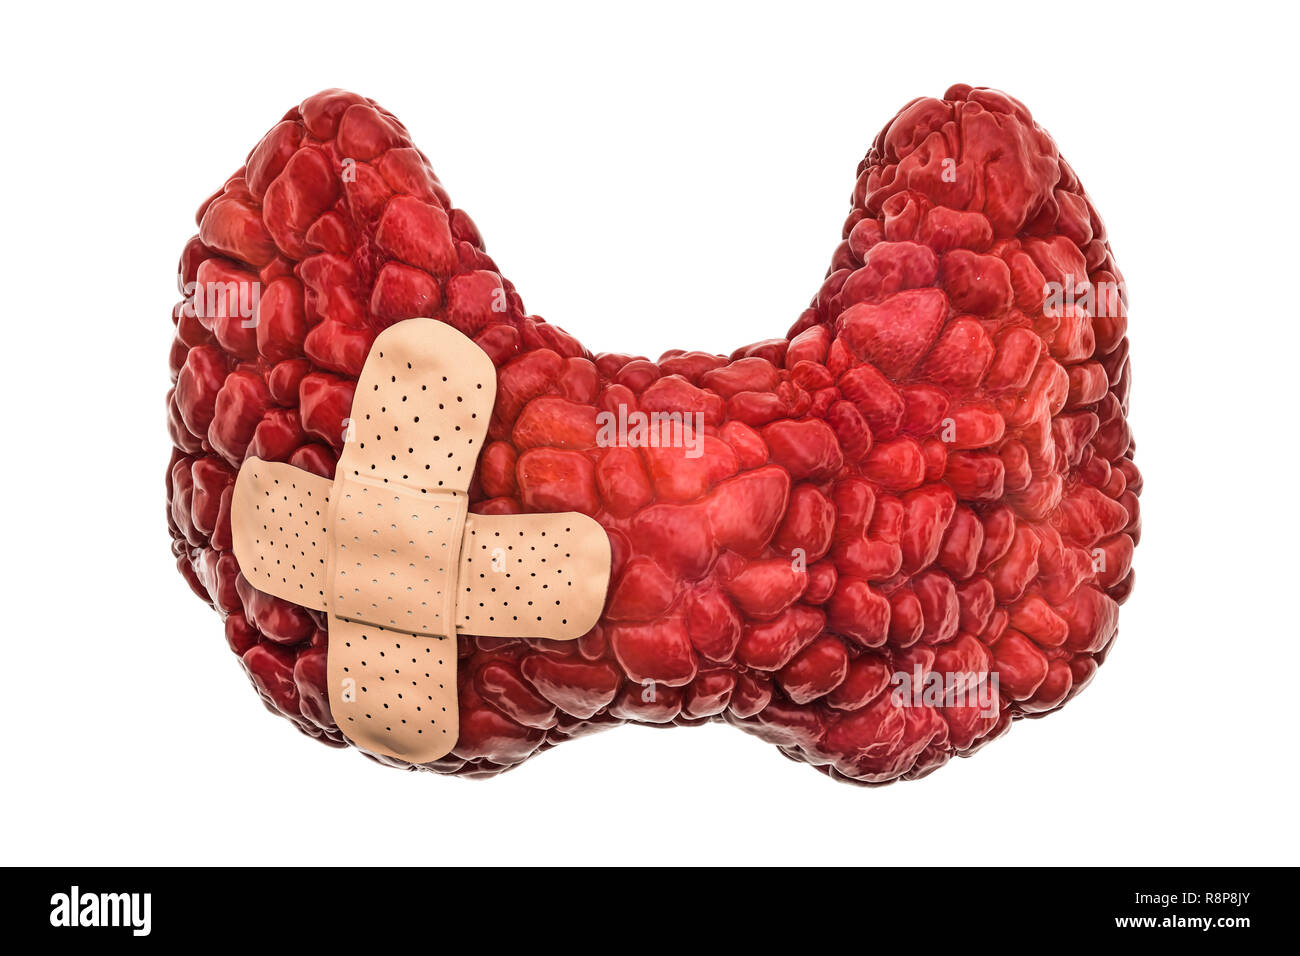 Die menschliche Schilddrüse mit wundschnellverband. Behandlung der Schilddrüse Konzept, 3D-Rendering auf weißem Hintergrund Stockfoto